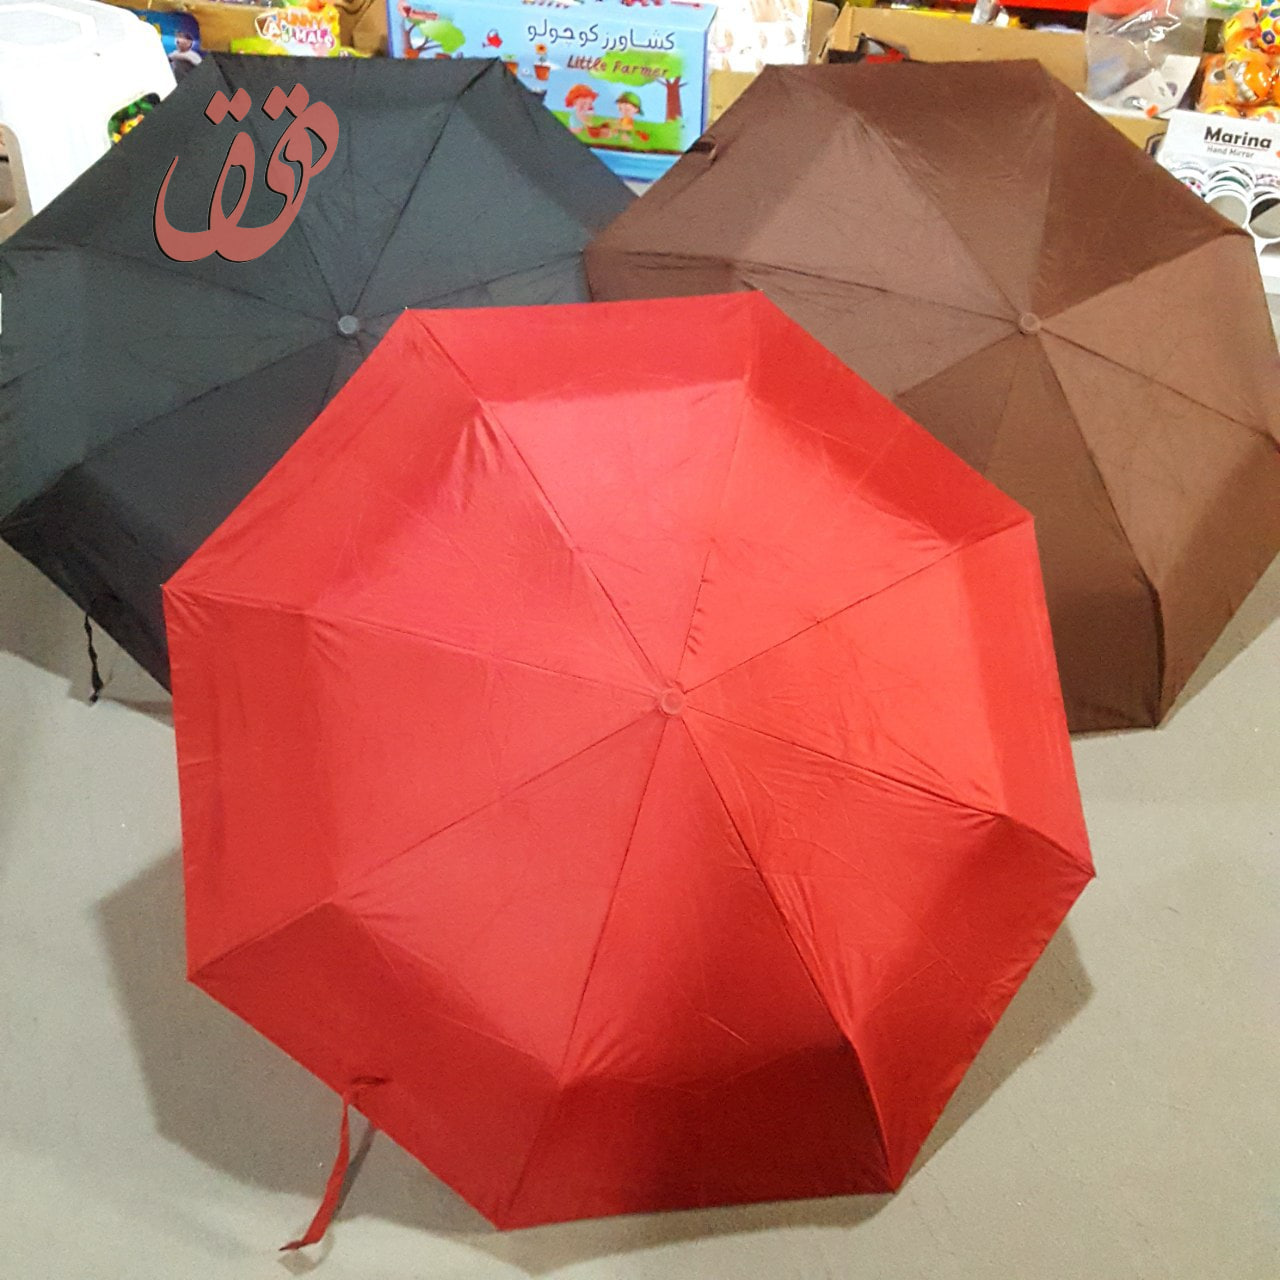     خرید چتر تاشو تمام اتوماتیک مردانه زنانه بزرگ به قیمت بسیار مناسب - ضد آب و ضد باد خارجی